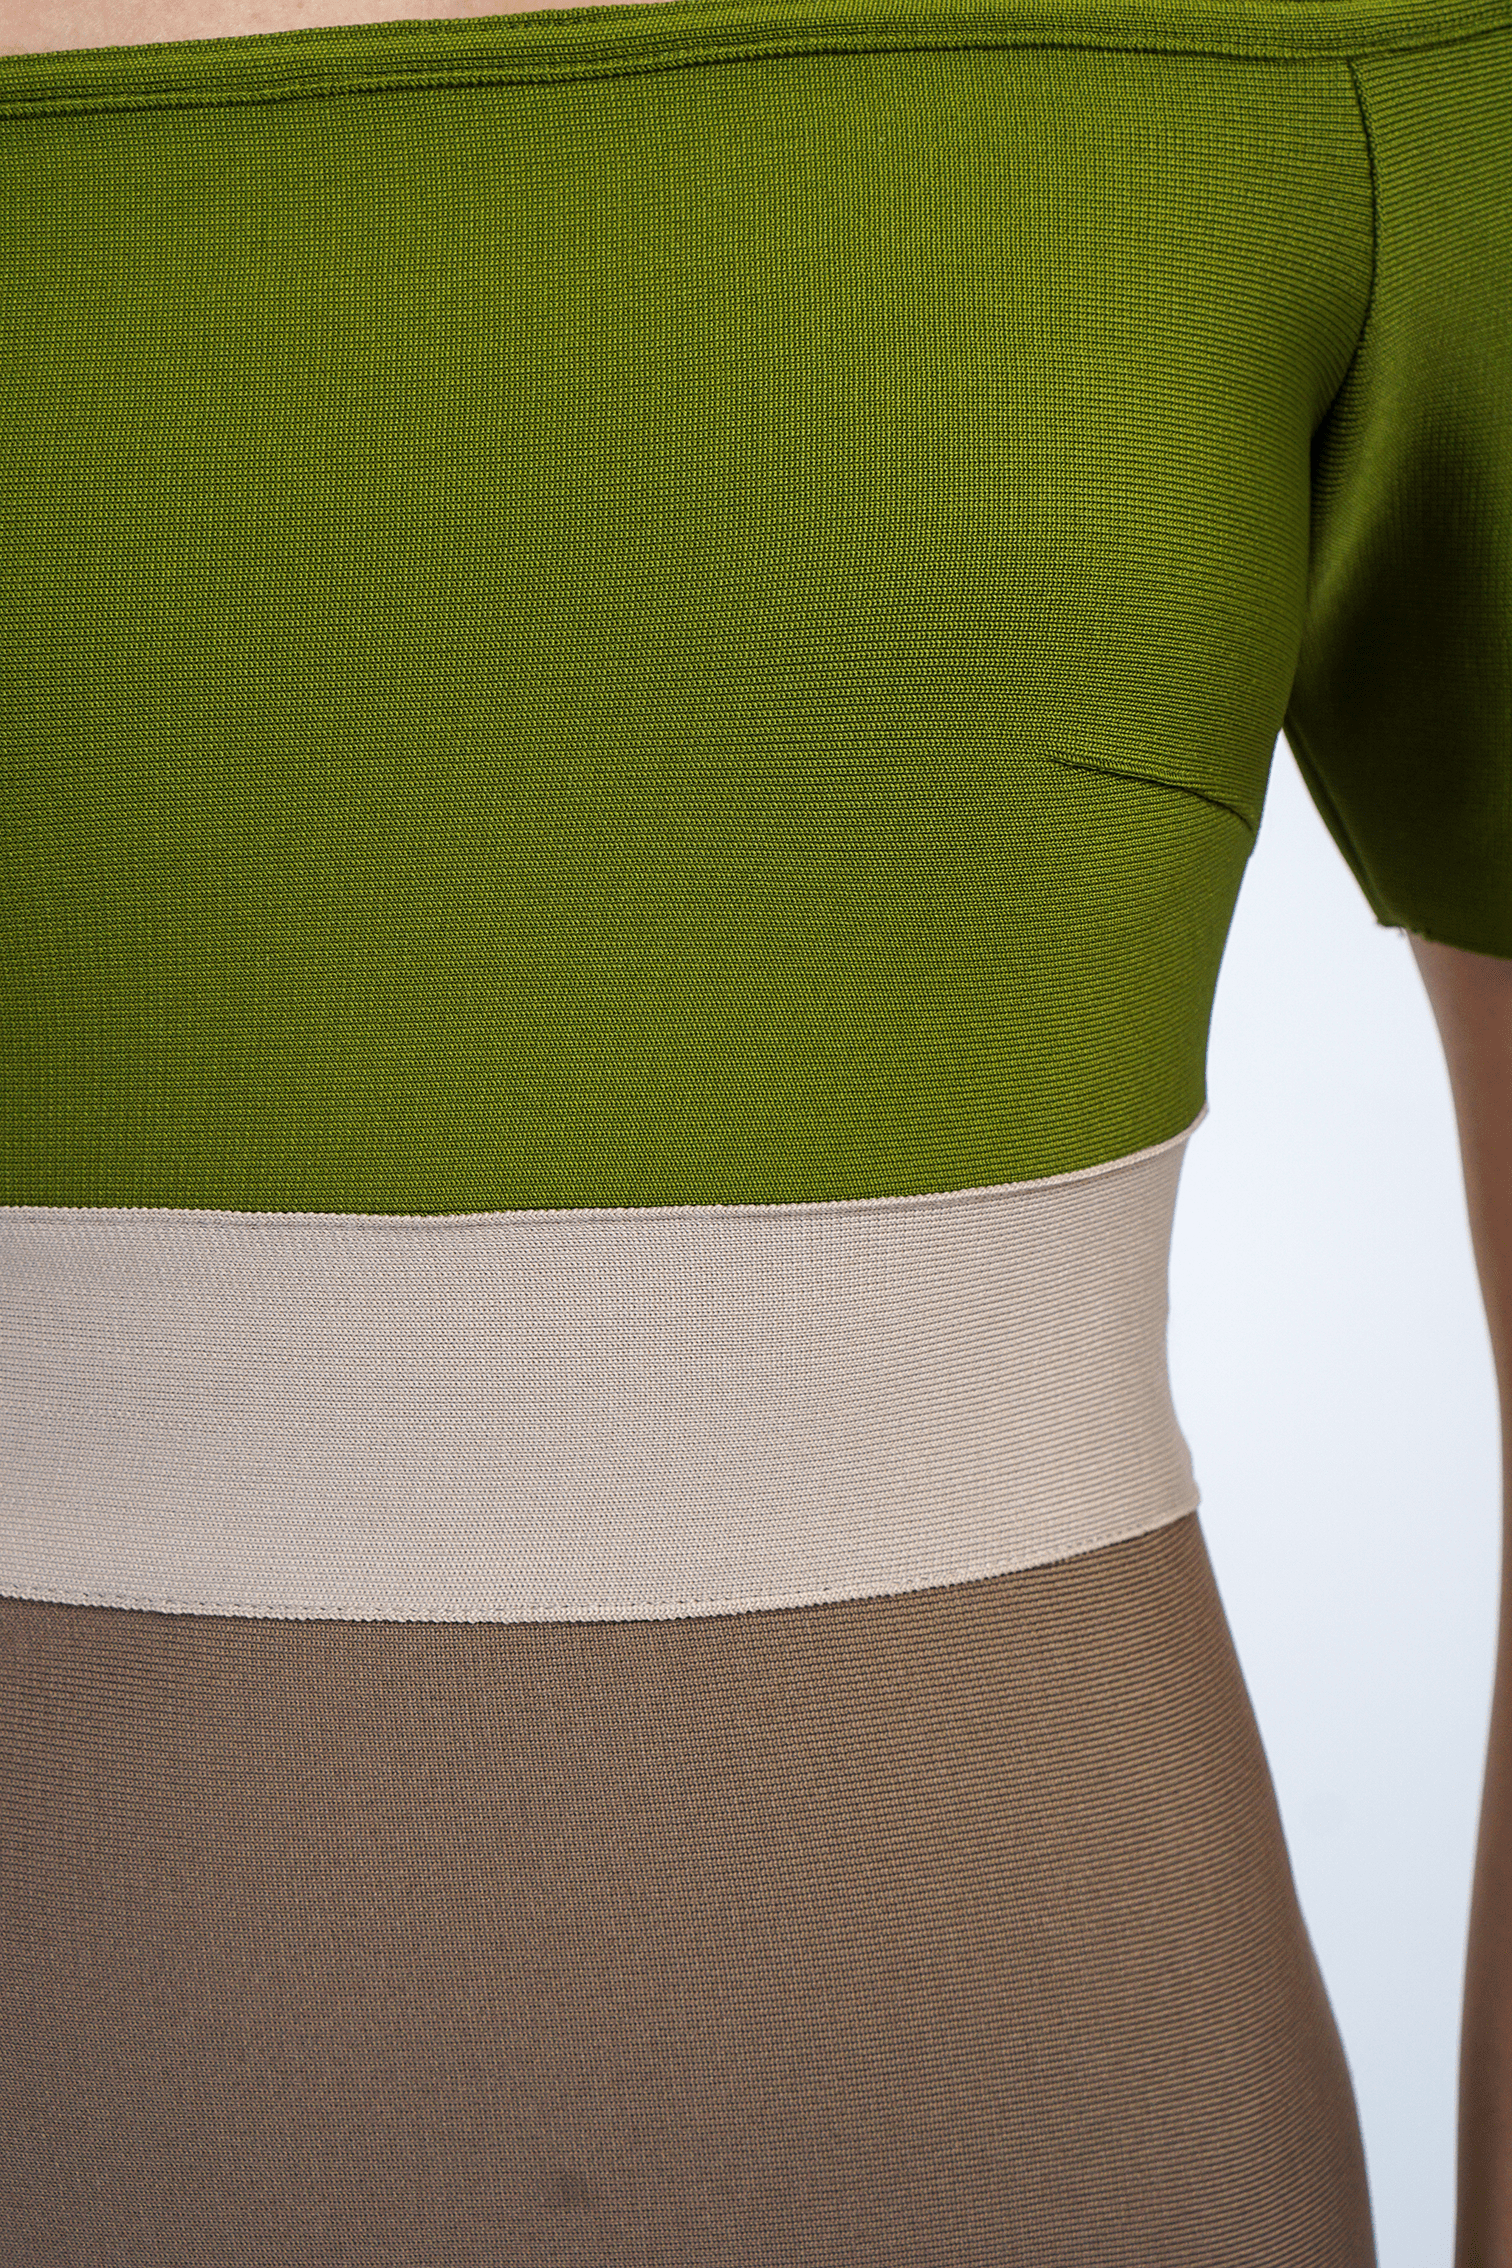 DCD DRESSES Olive Color Block Bandage Off Shoulder Dress